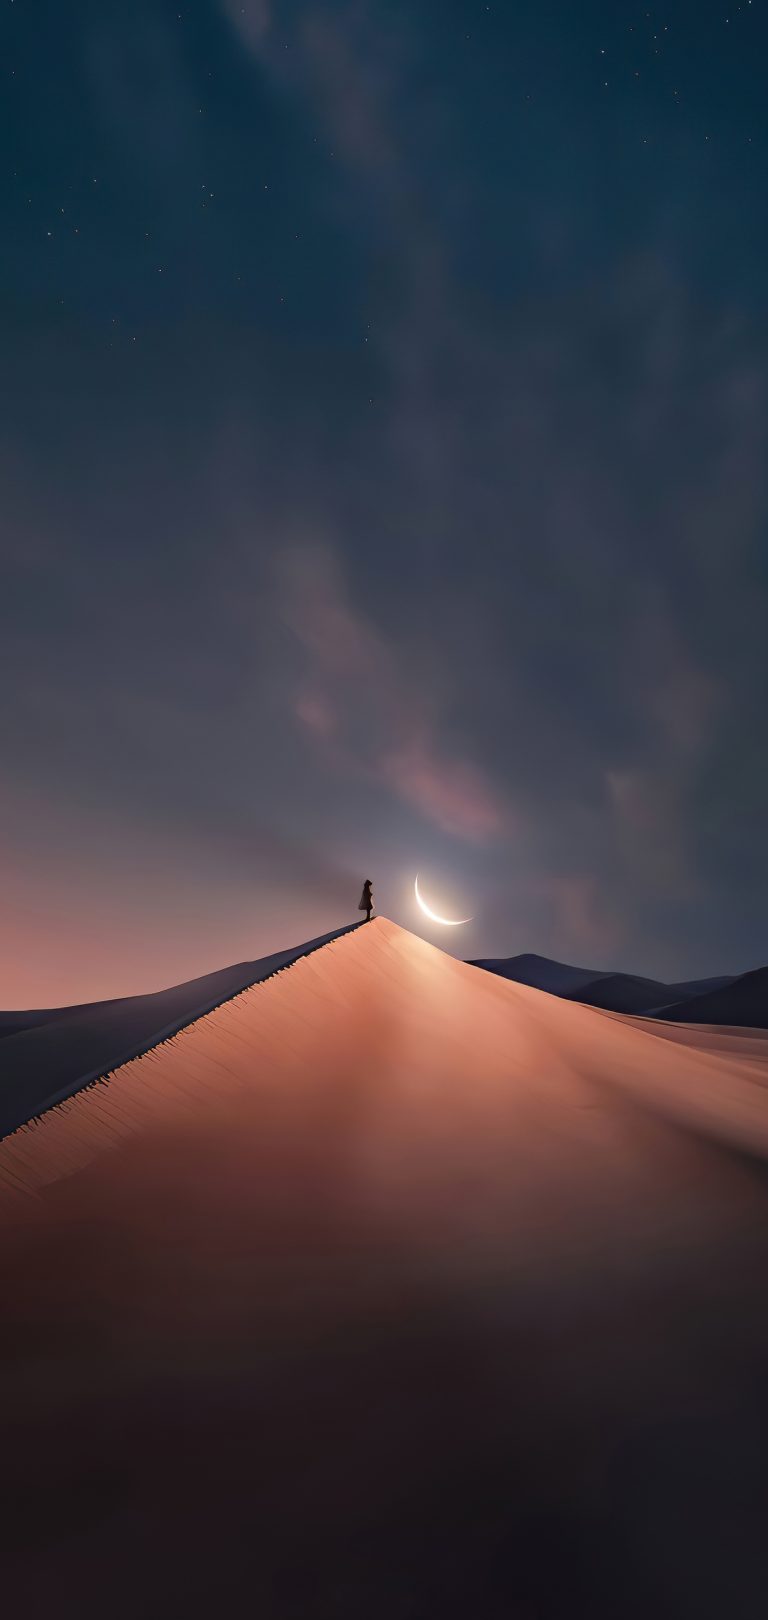 والپیپر های منظره آسمان شب برای آیفون ۴